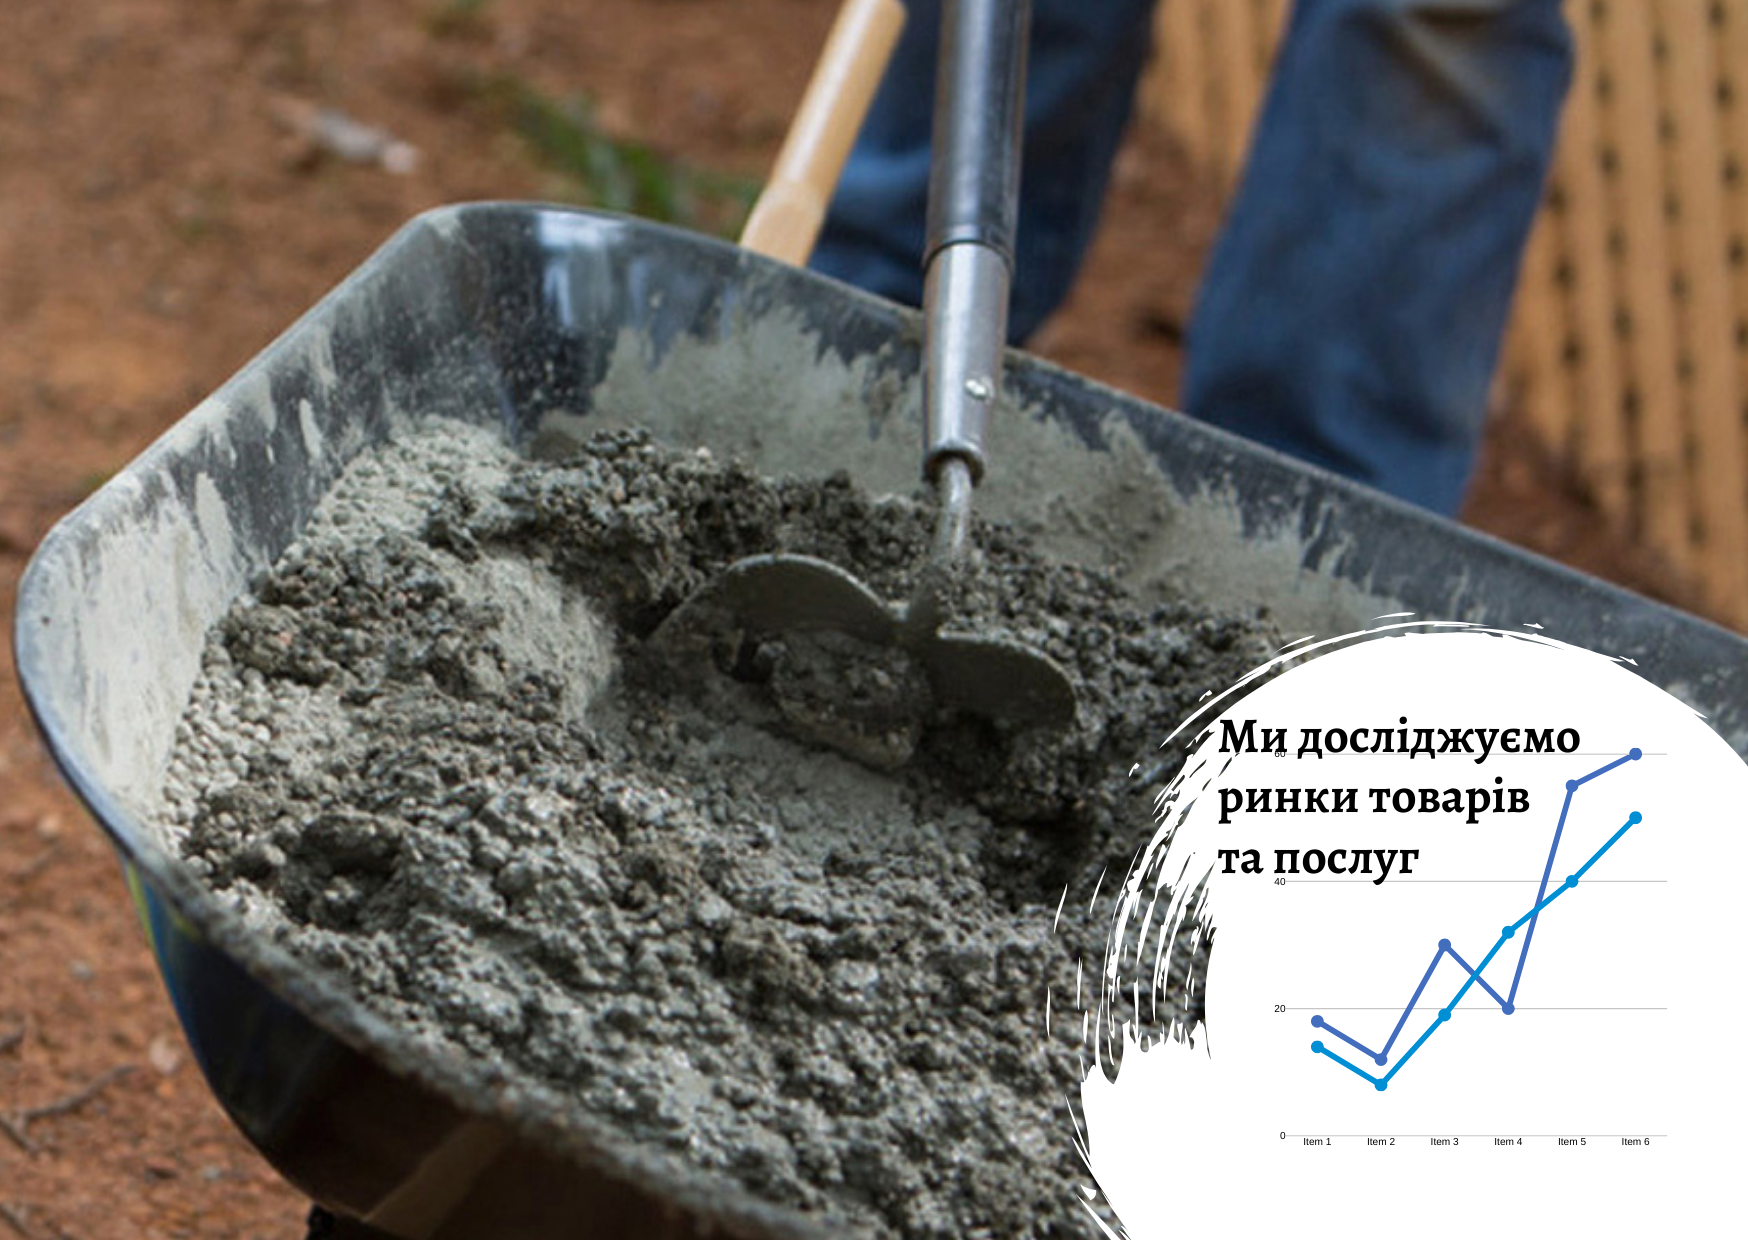 Ukrainian heavy concrete mixtures market: influencing factors